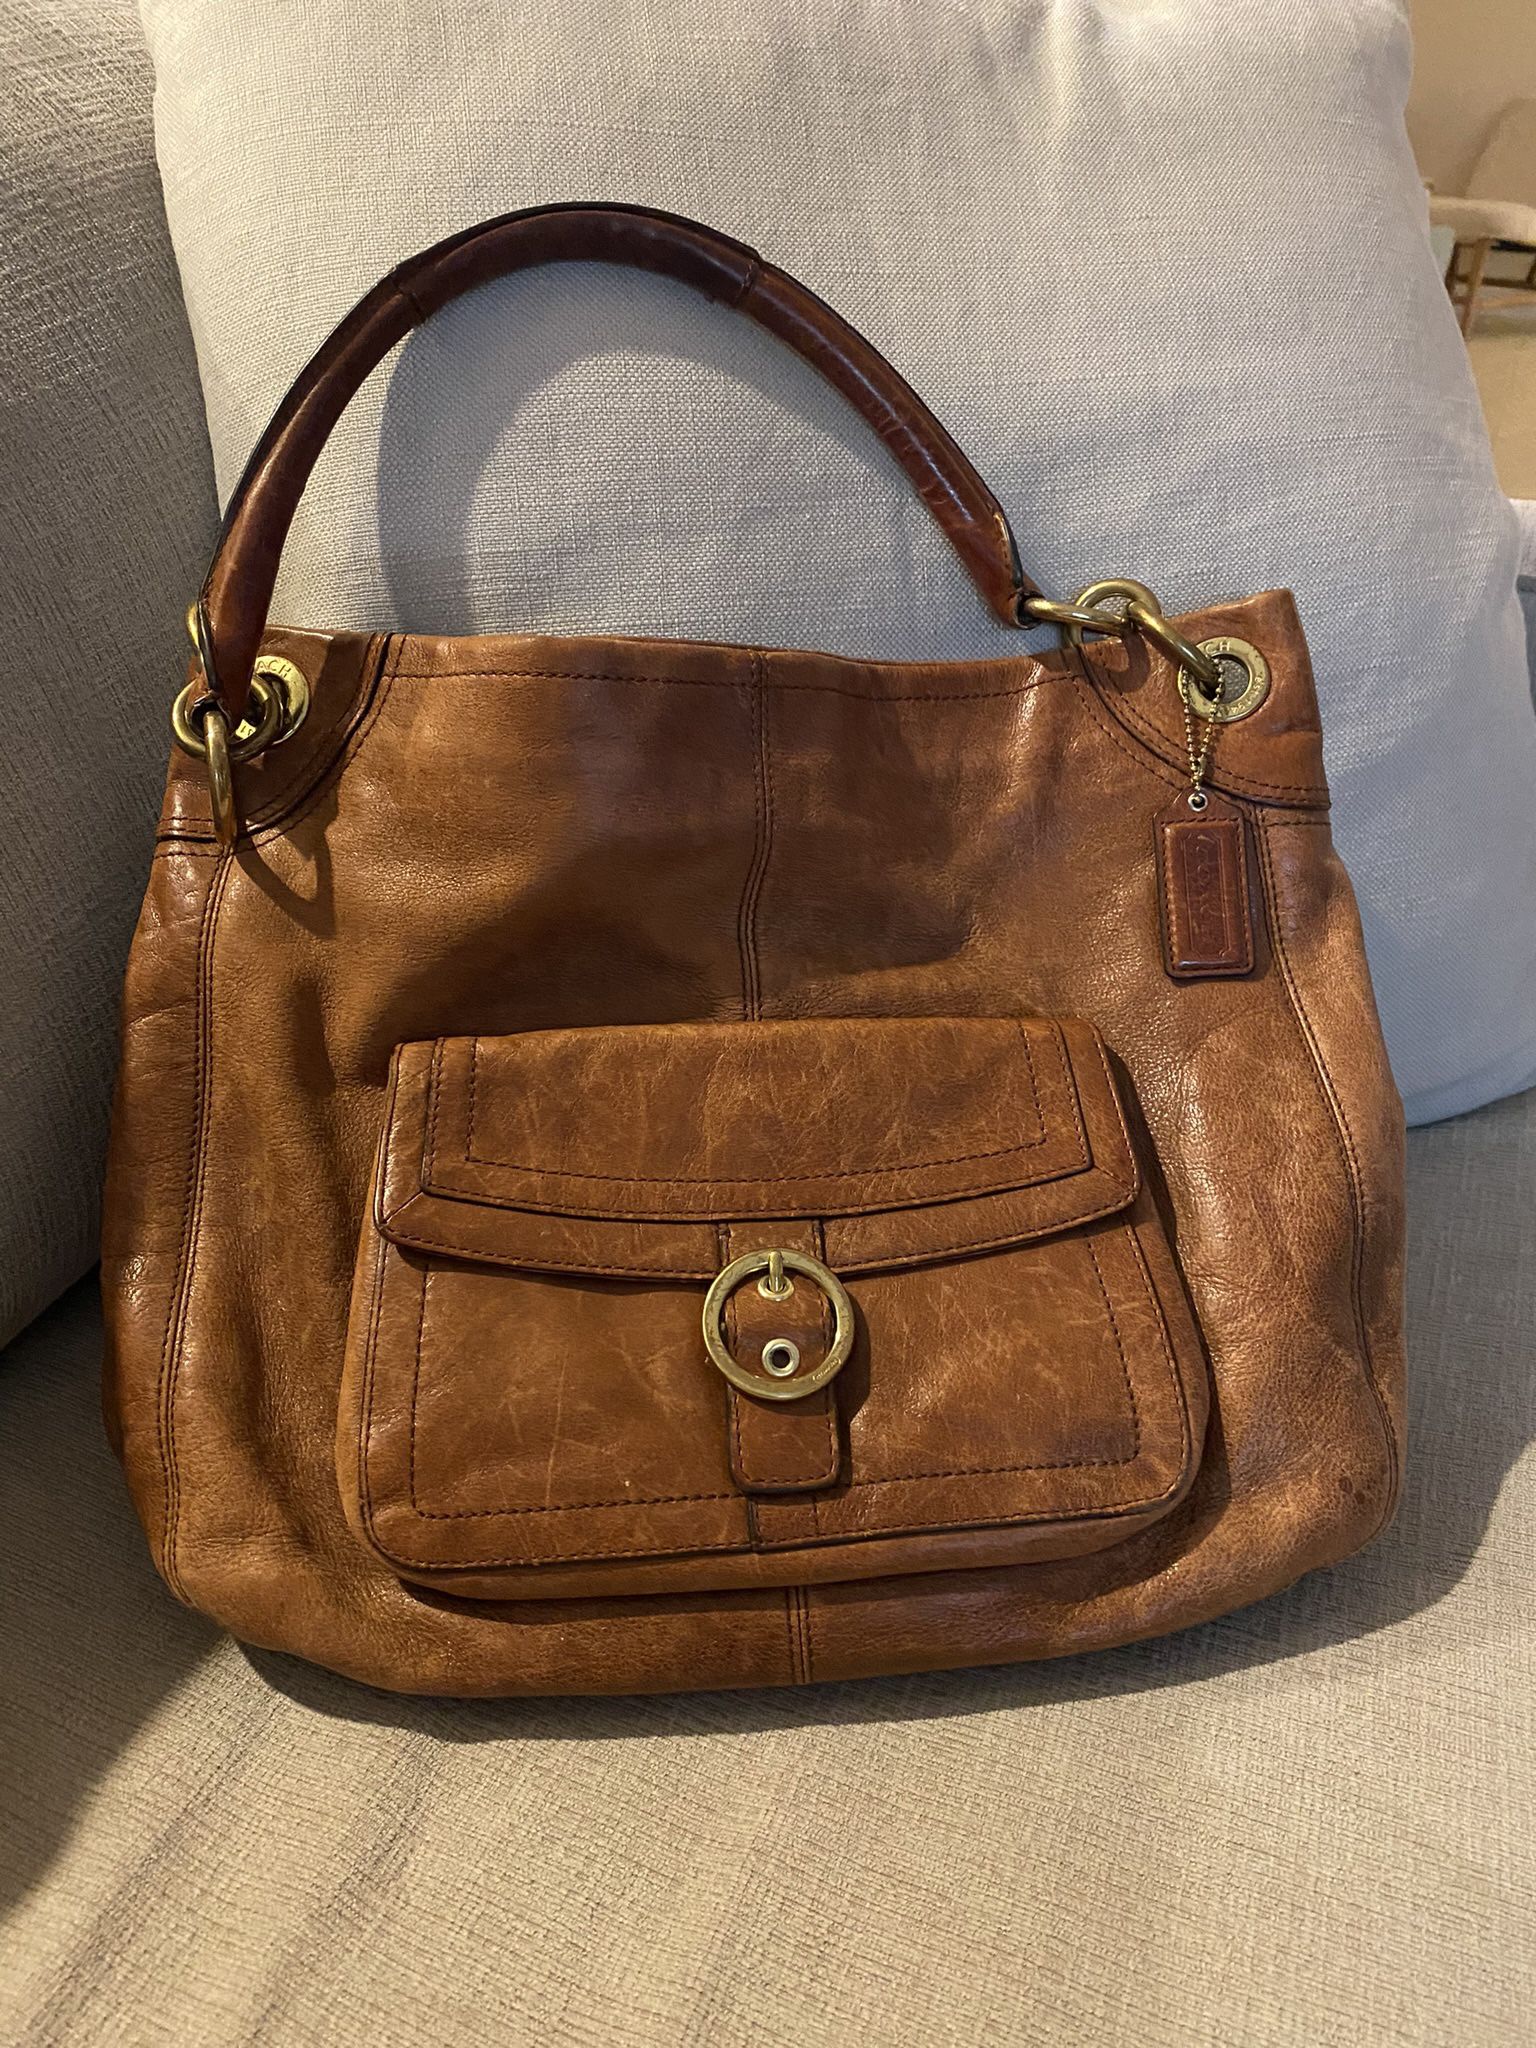 Coach Handbag / Handbag / Leather Hobo / leather bag